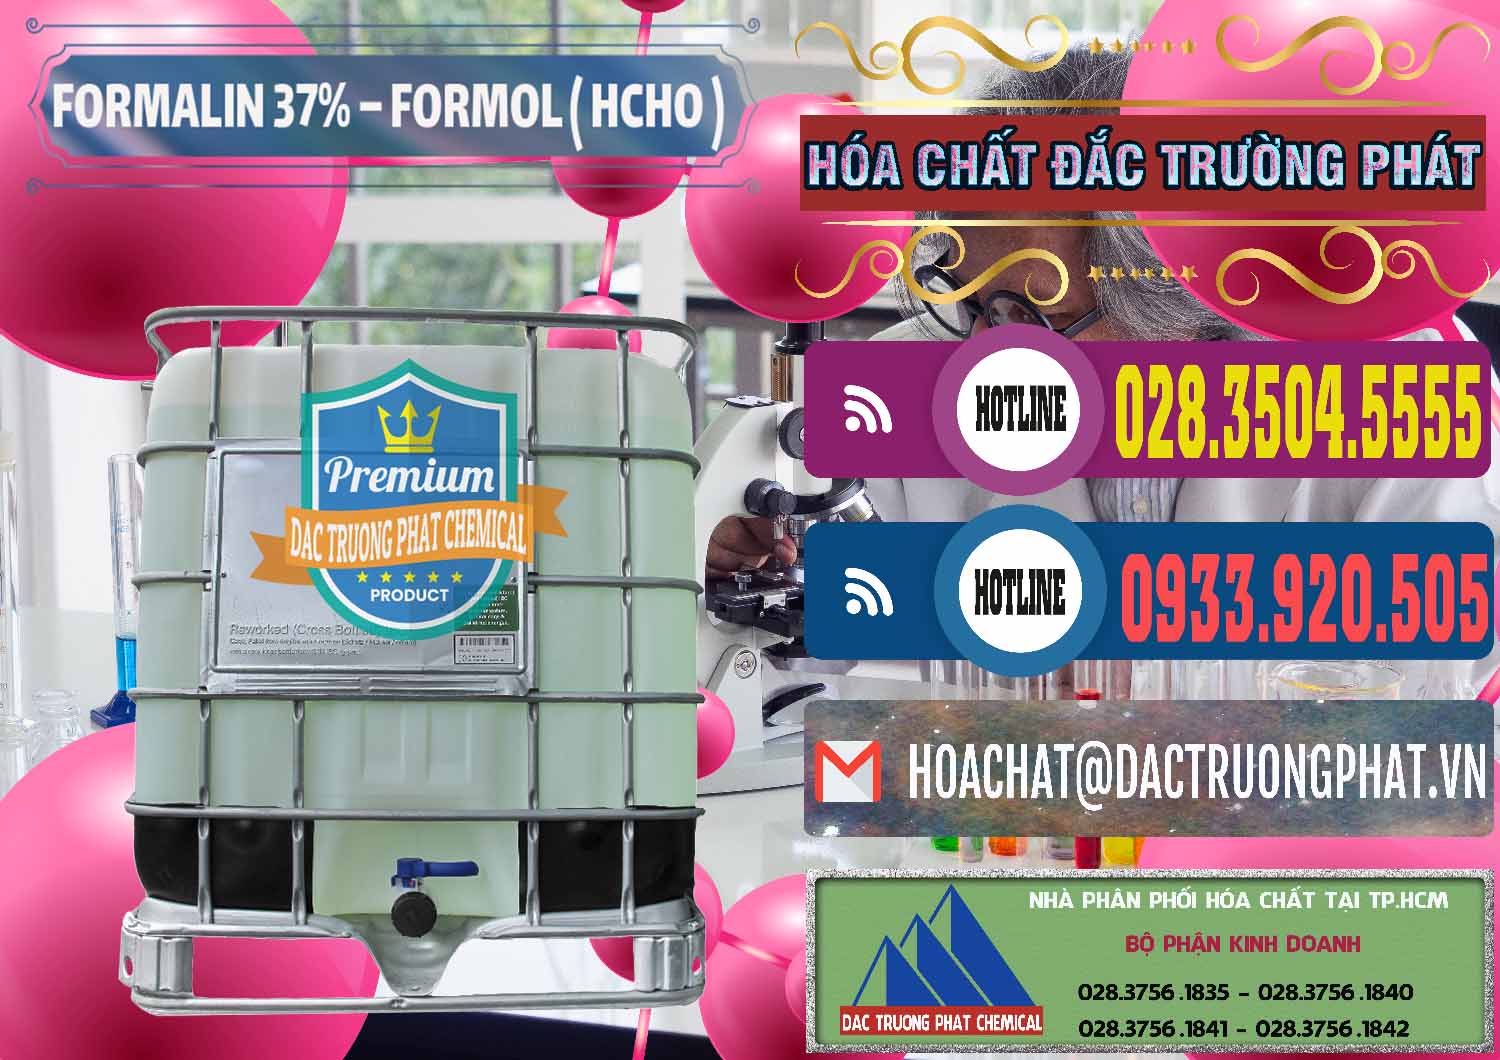 Cty kinh doanh - cung cấp Formalin - Formol ( HCHO ) 37% Việt Nam - 0187 - Công ty chuyên cung cấp & kinh doanh hóa chất tại TP.HCM - muabanhoachat.com.vn